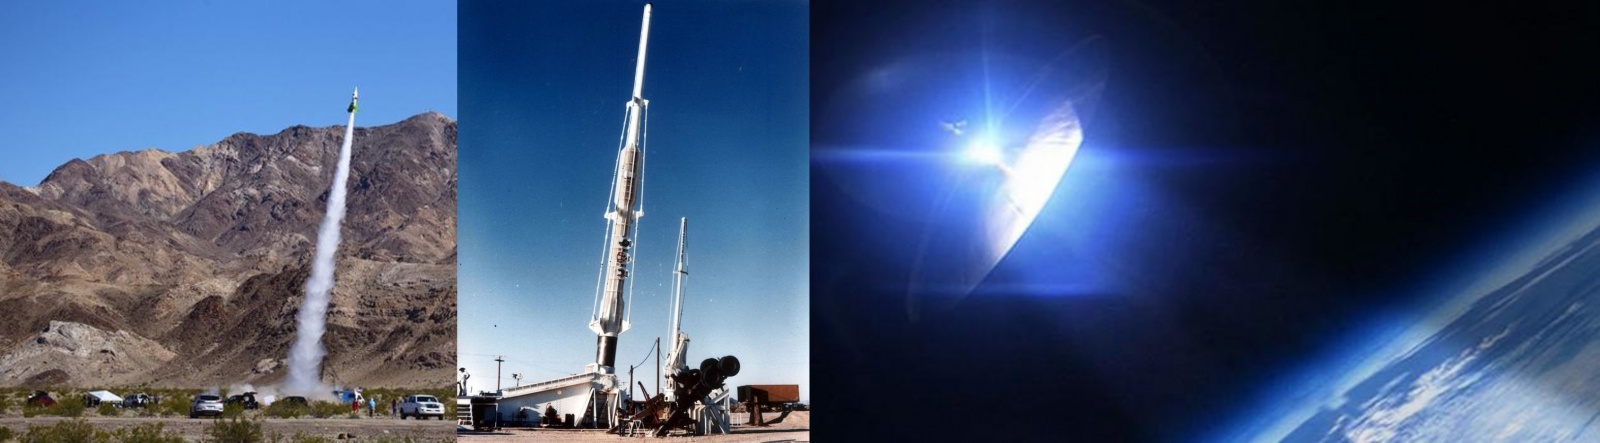 Космическая пушка, паровая ракета и орбитальное зеркало - 1